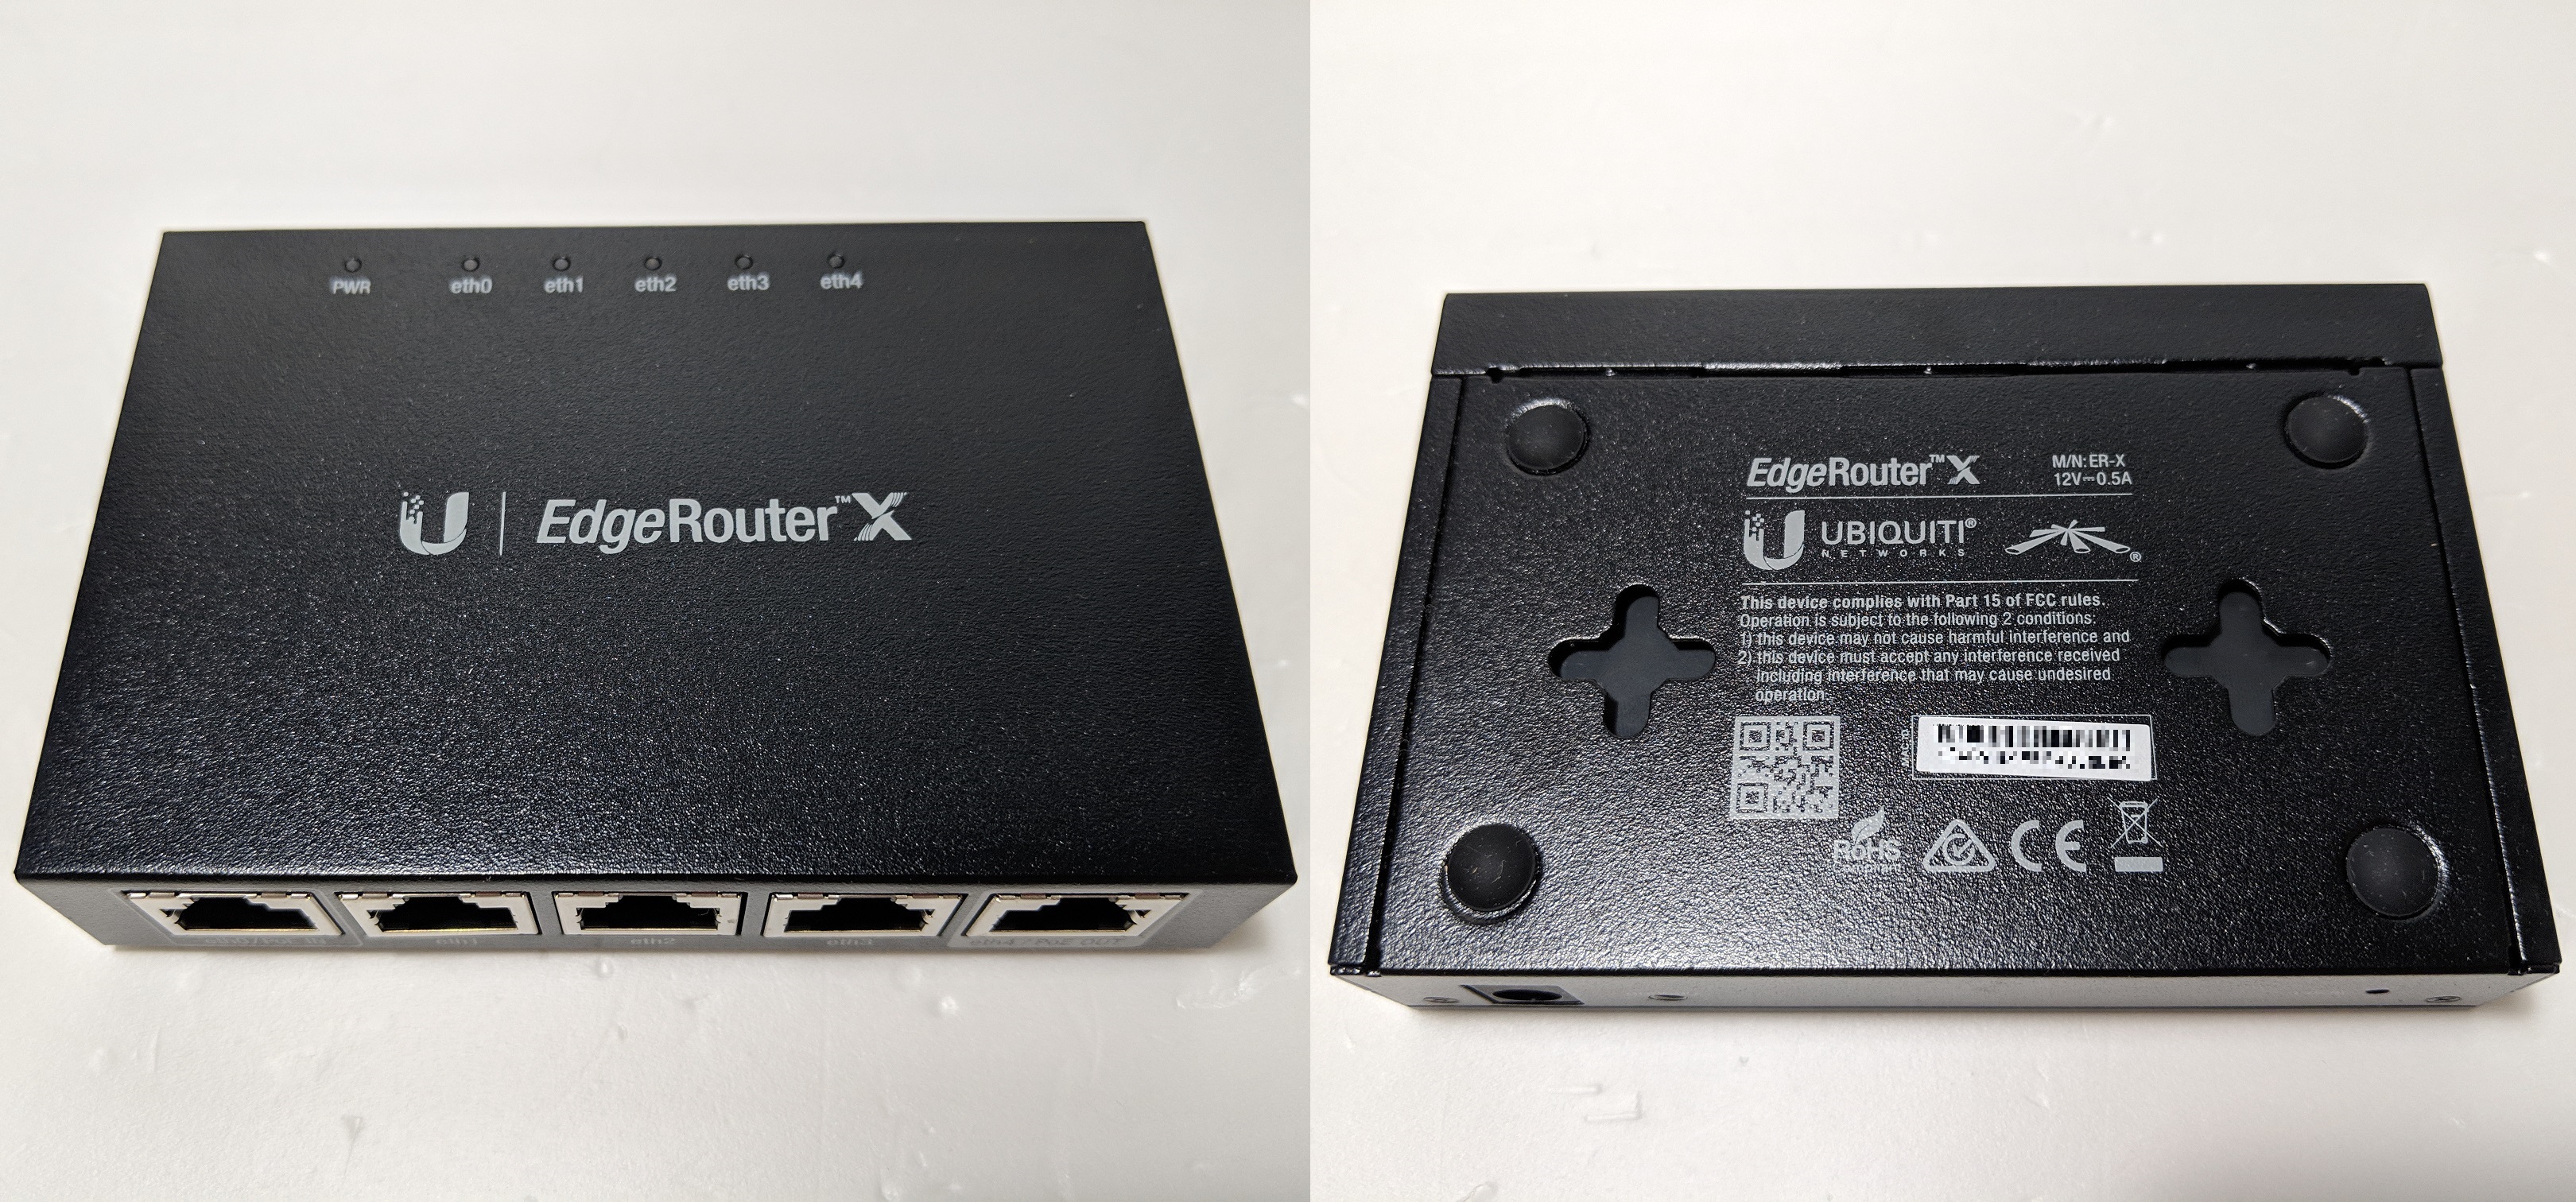 Ubiquiti Networks EdgeRouter X Gigabit Ethernet Router